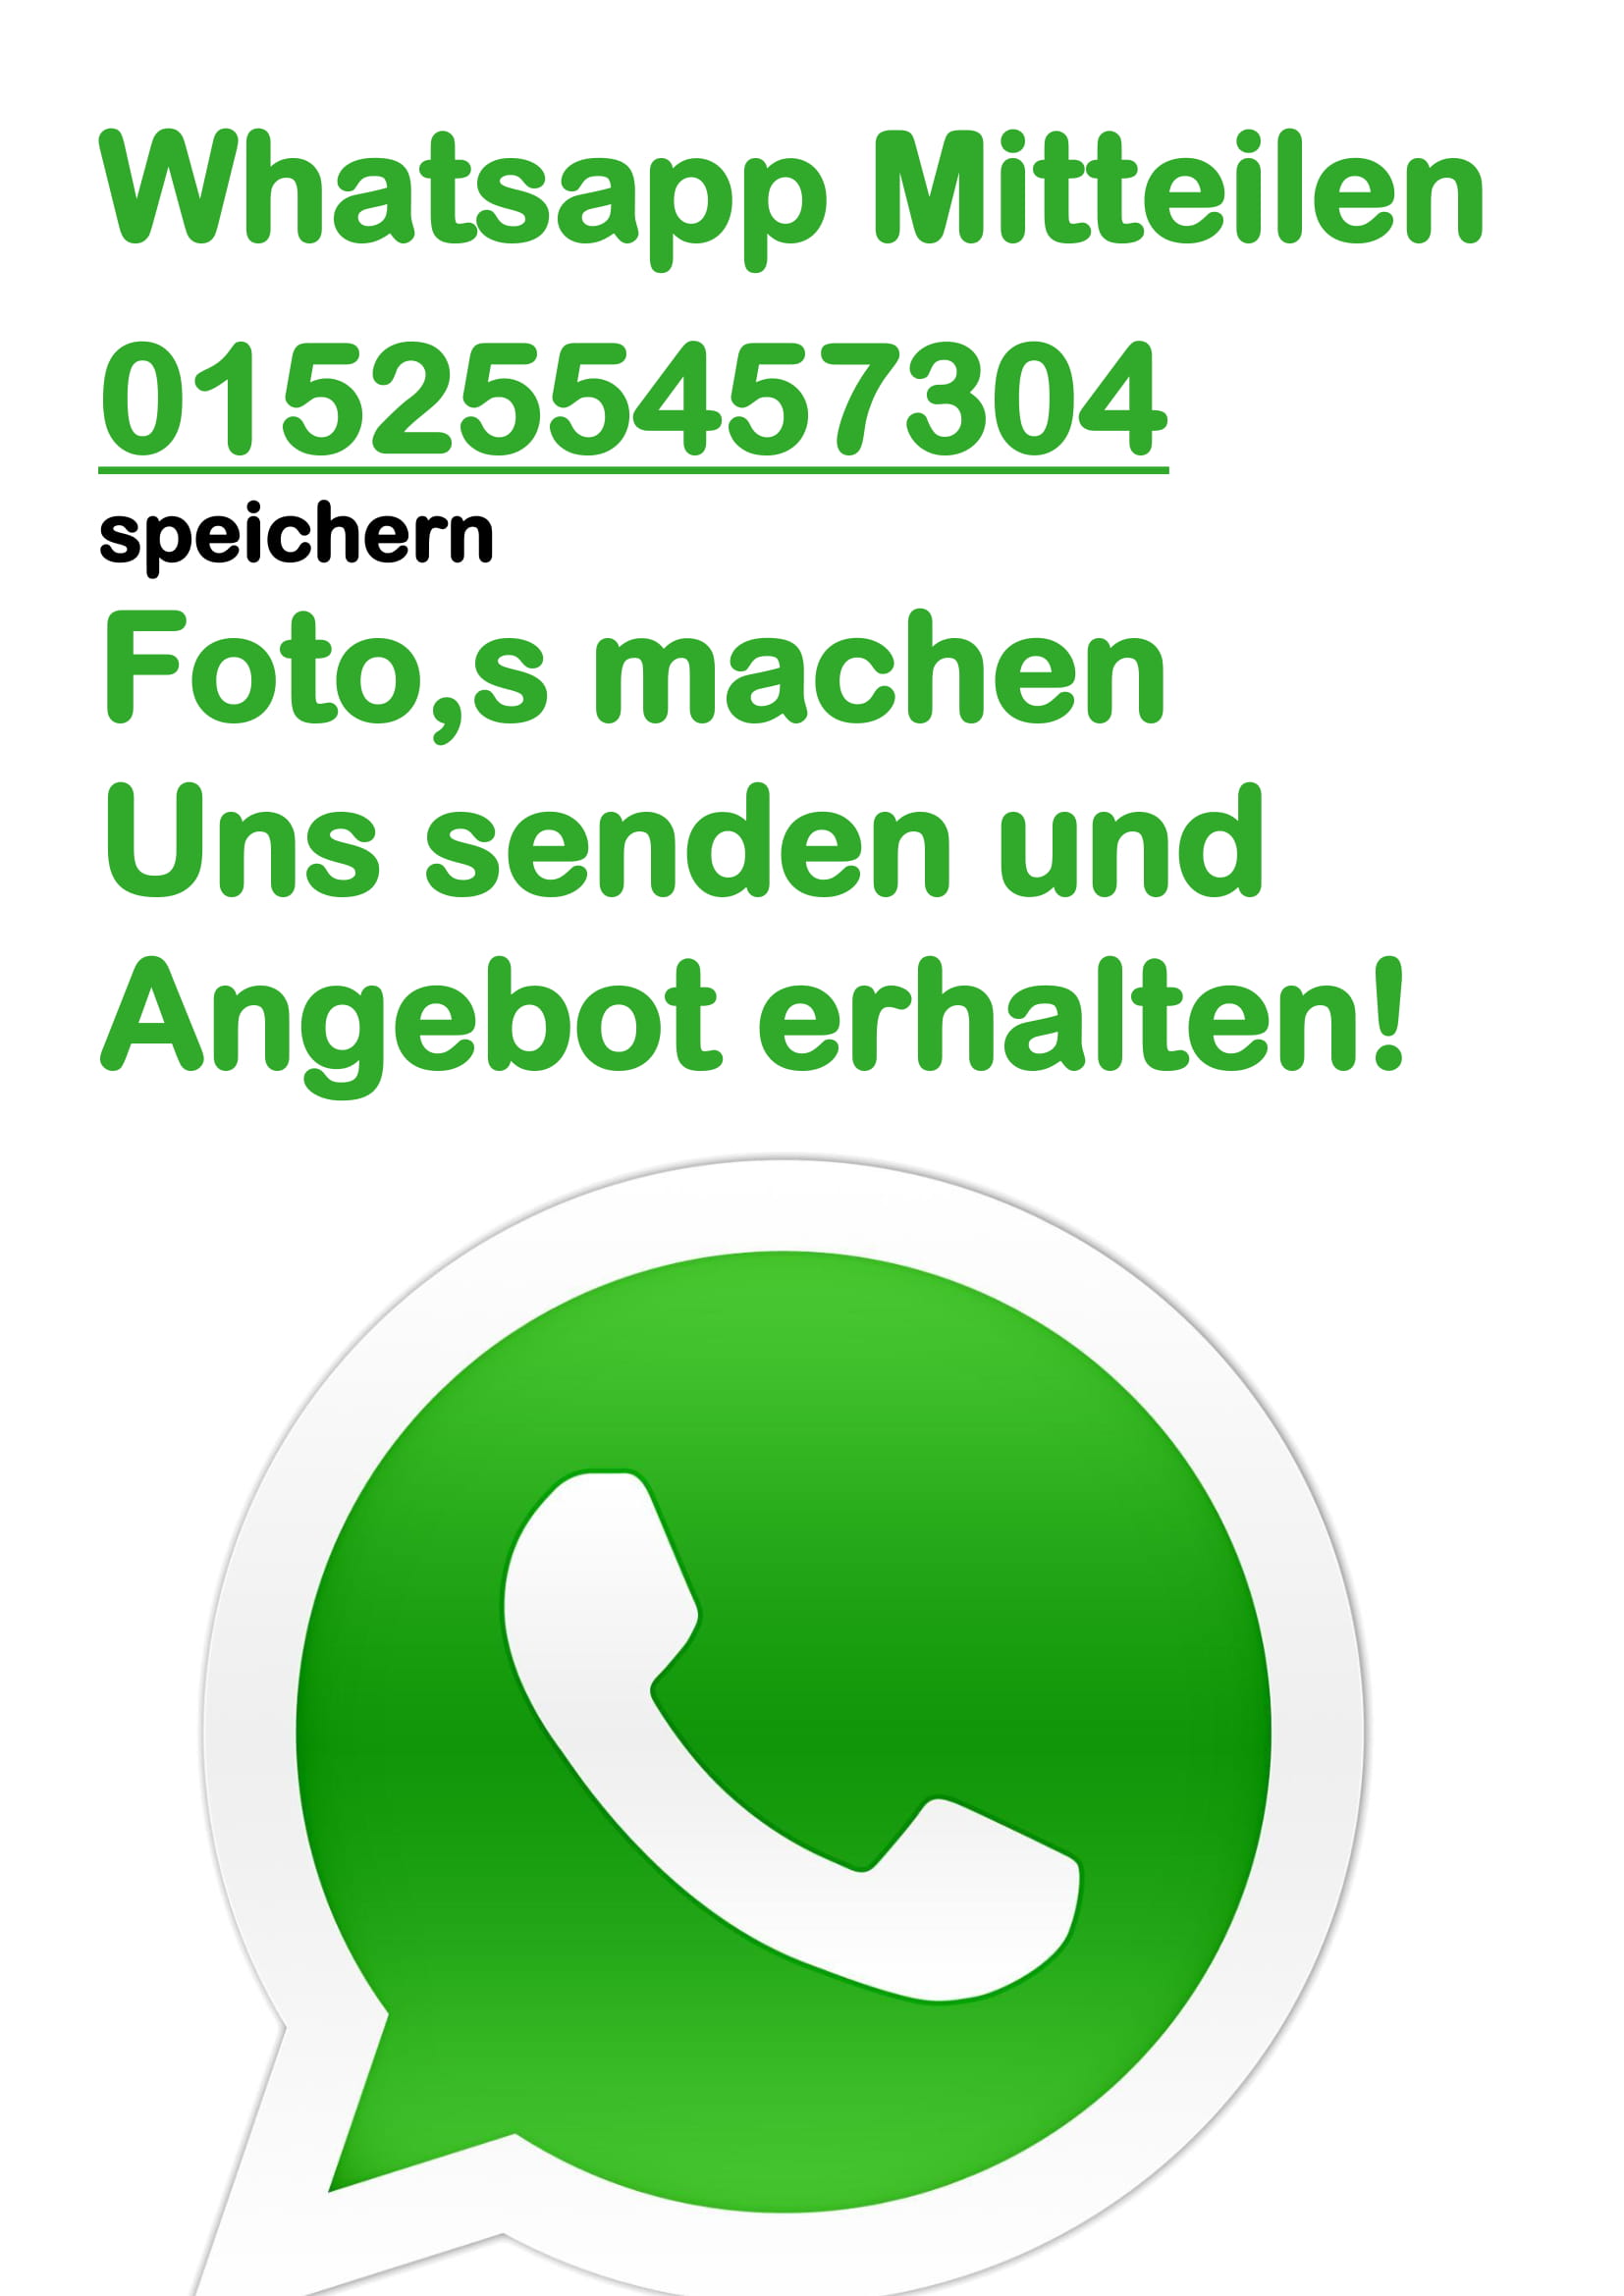 Autoankauf mit Whatsapp einfach Bild und Daten senden und Angebot erhalten